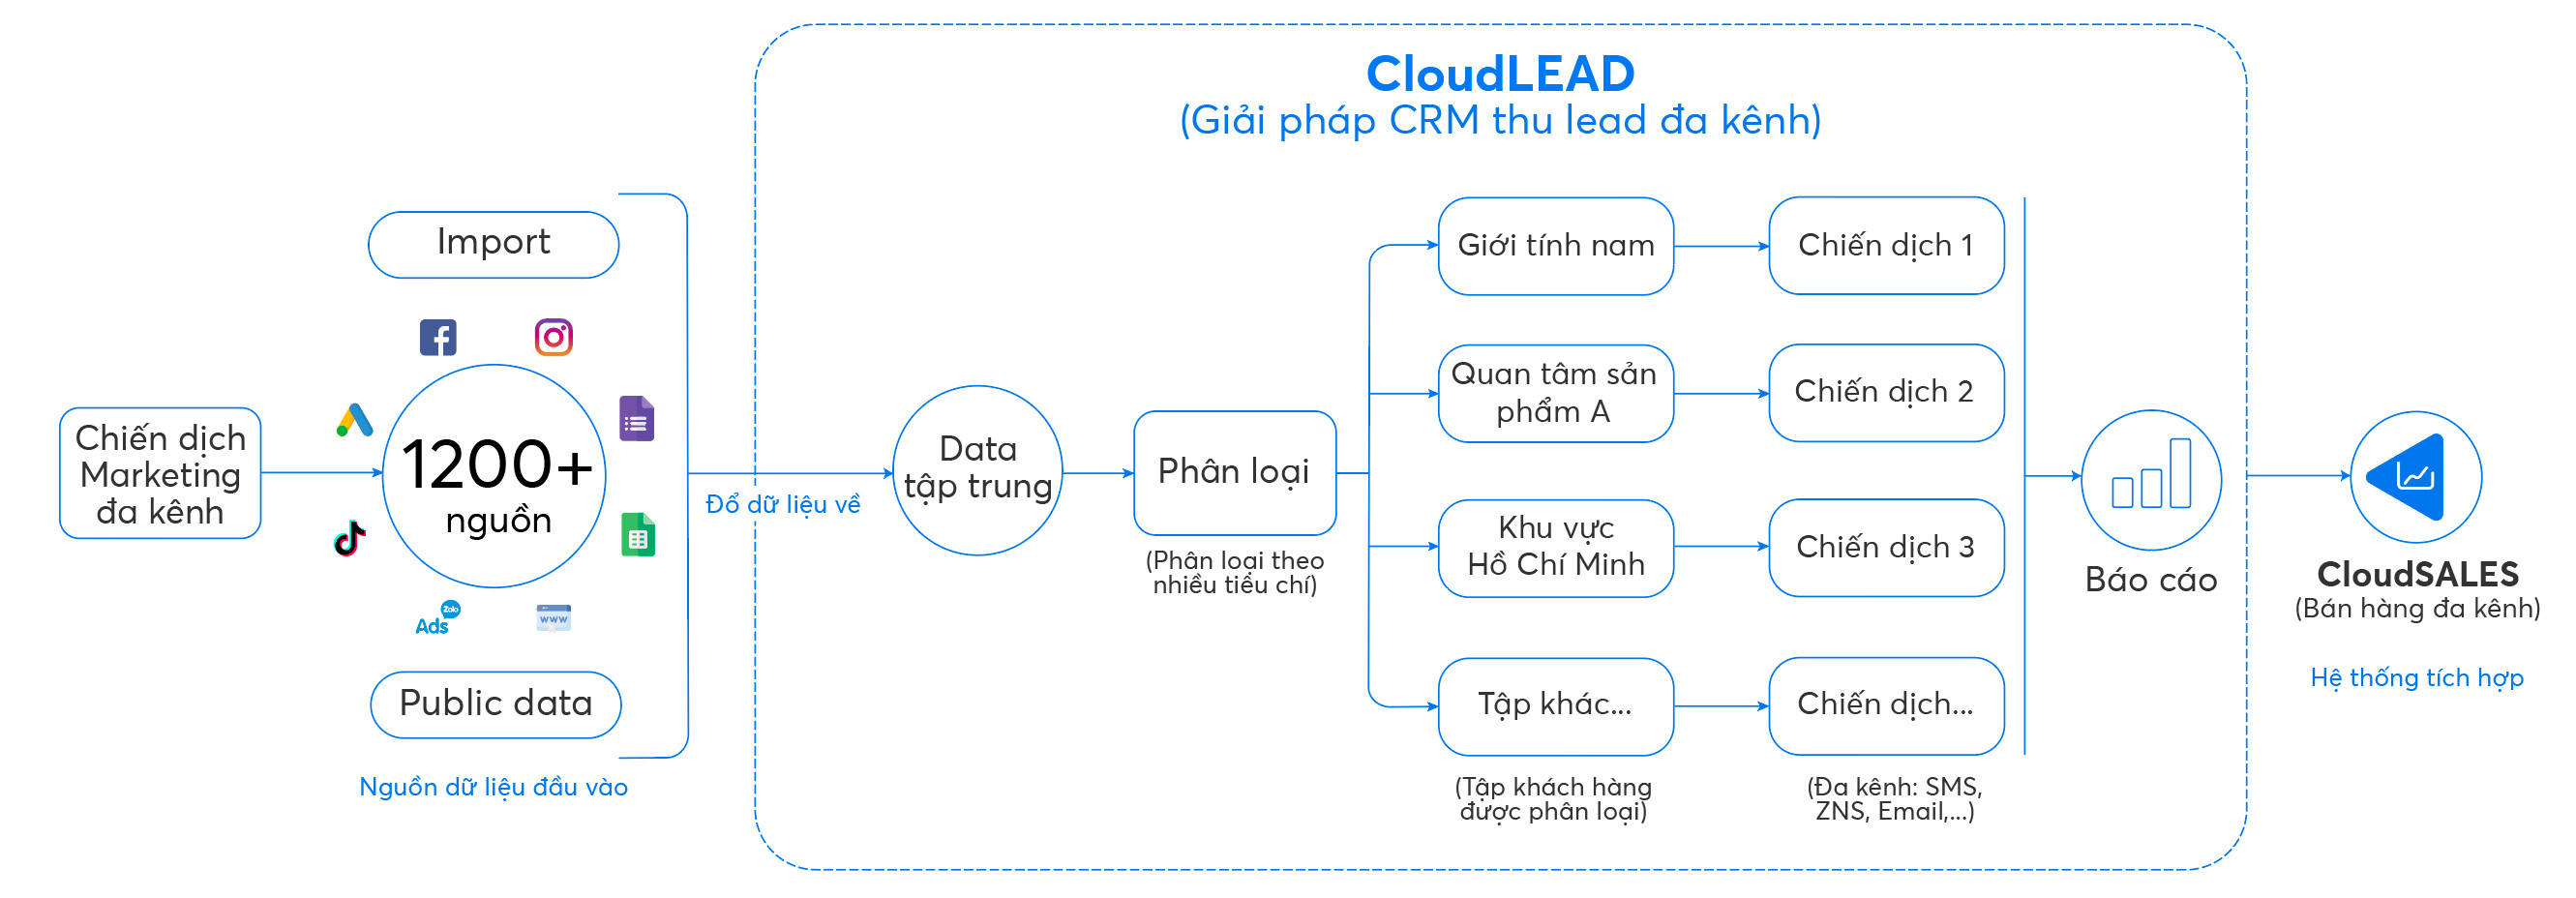 Quy trình giải pháp thu lead đa kênh bằng CloudLEAD